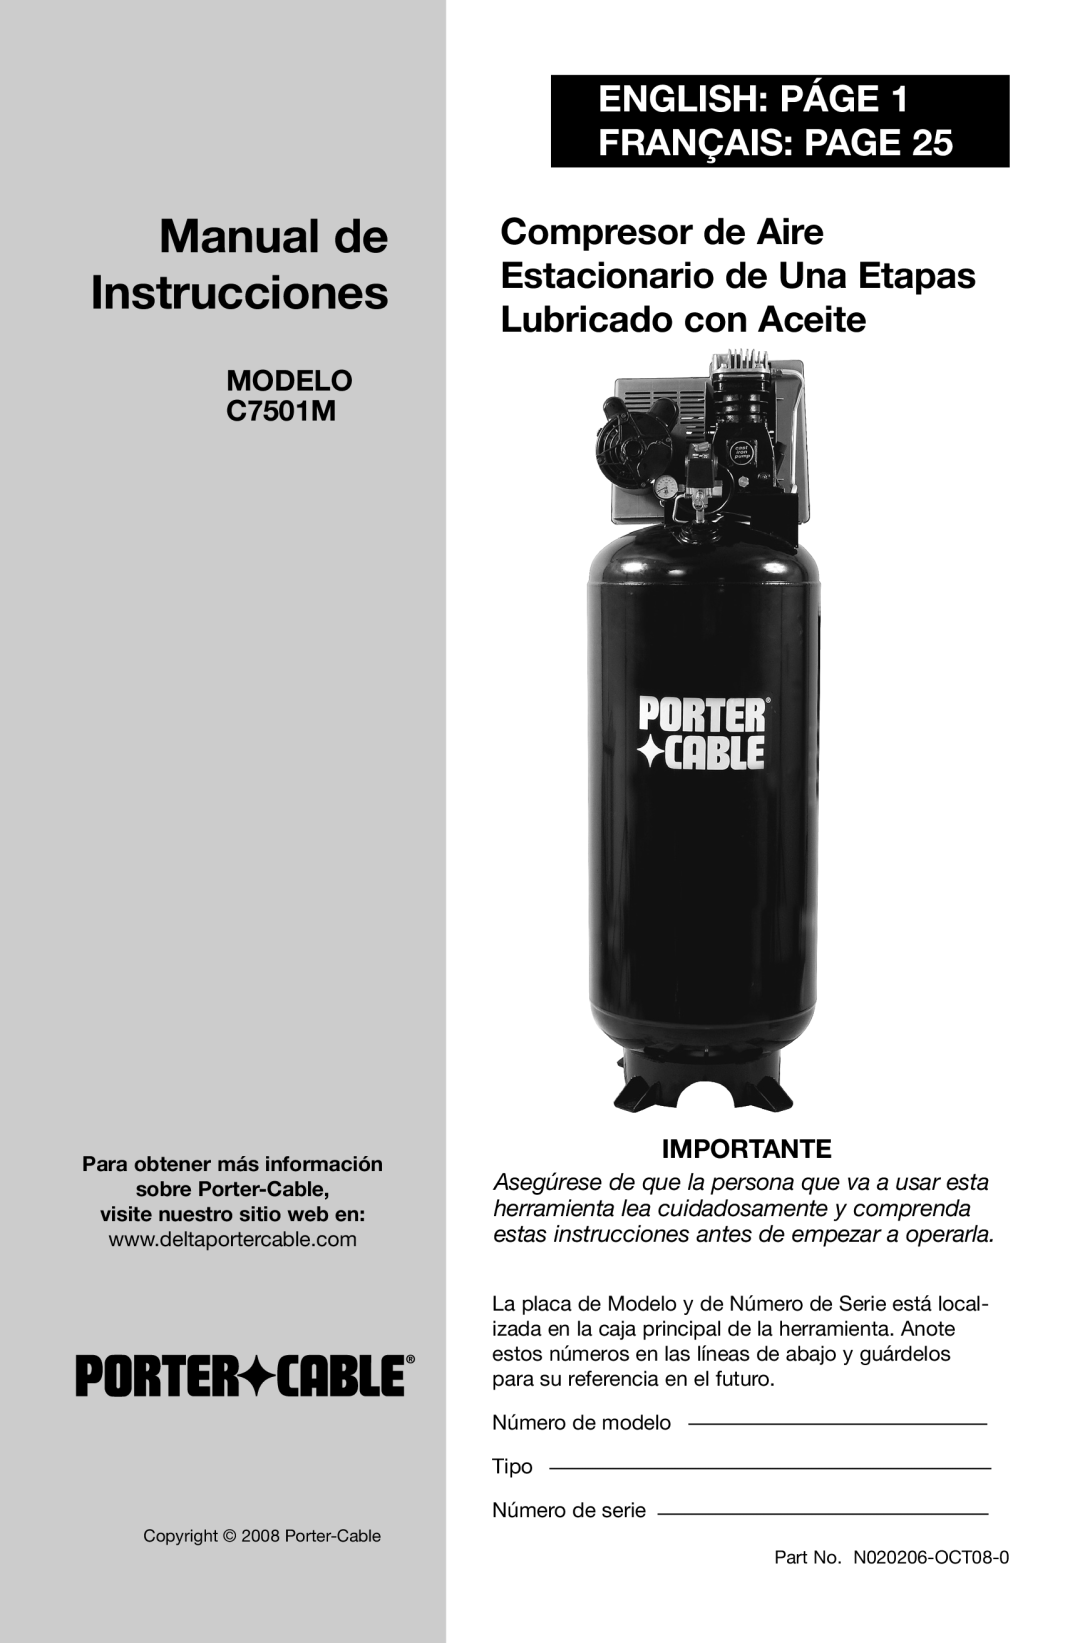 Porter-Cable N020206-NOV08-0 Manual de Instrucciones, English Páge Français Page, MODELO C7501M, Importante 